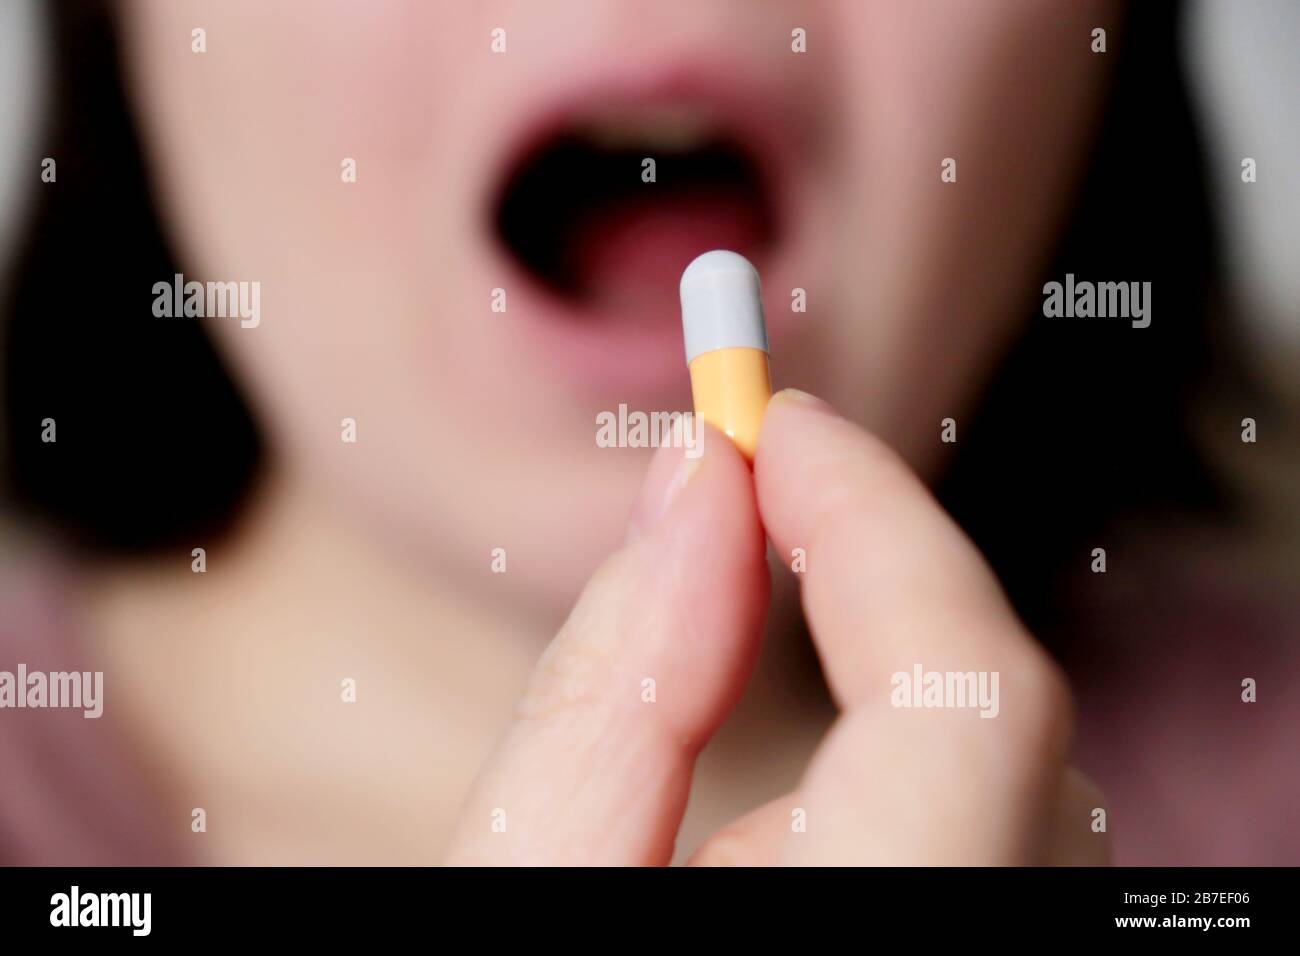 Frau nimmt eine Tablette, Mädchen legt Kapsel in offenen Mund. Kranke Frauen, die Medikamente nehmen, Konzept von Antibiotika, Vitamin, Coronavirus Prävention Stockfoto